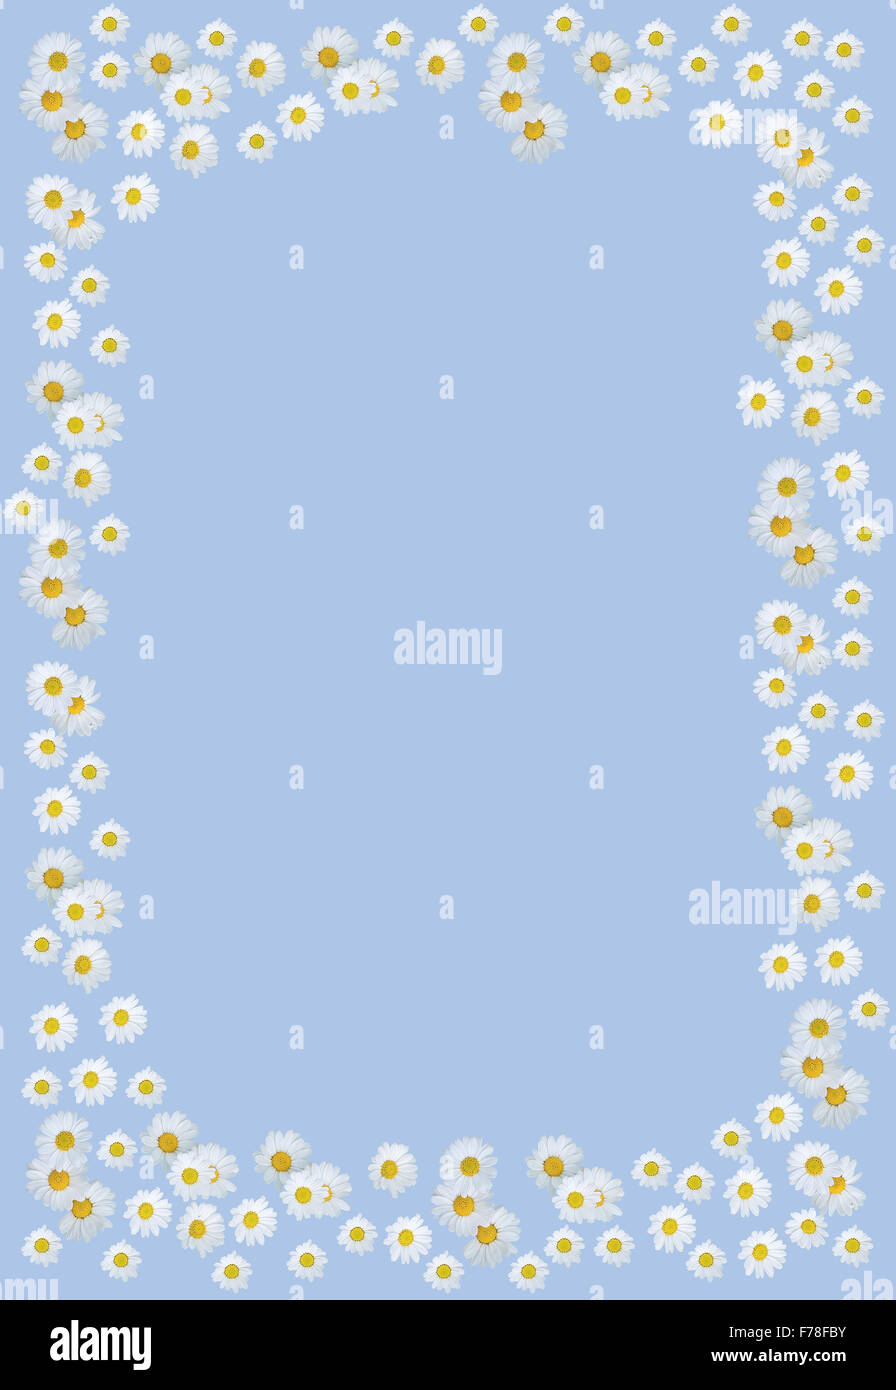 White daisy flower summer border frame on Serenity Blue background Stock Photo